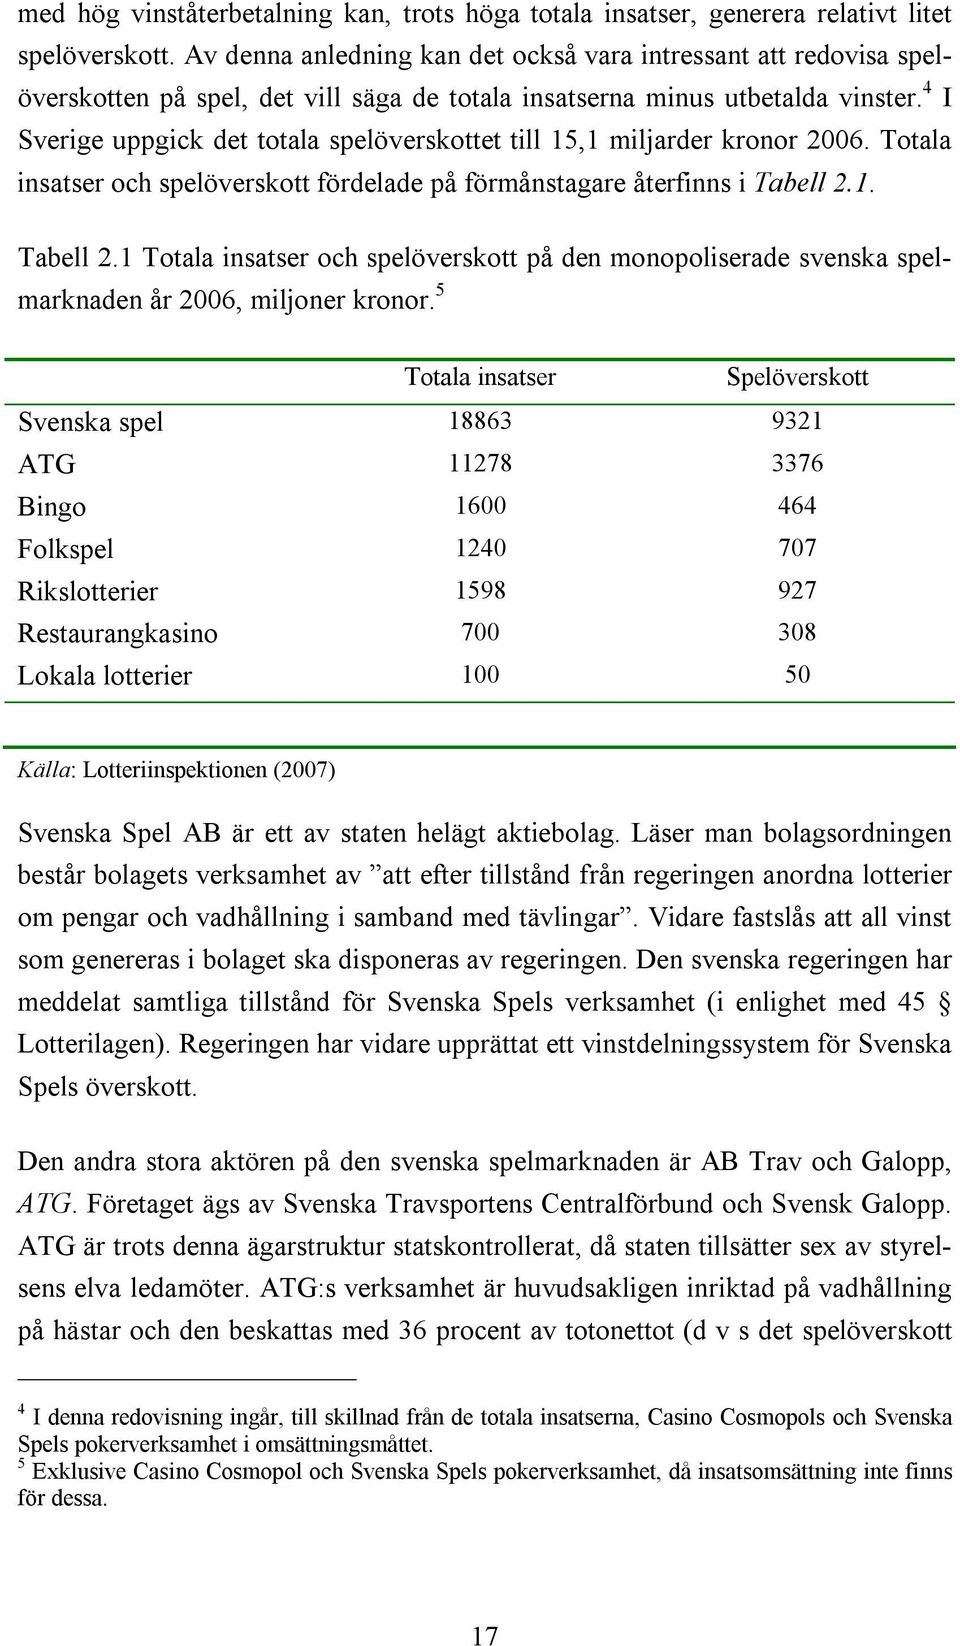 4 I Sverige uppgick det totala spelöverskottet till 15,1 miljarder kronor 2006. Totala insatser och spelöverskott fördelade på förmånstagare återfinns i Tabell 2.